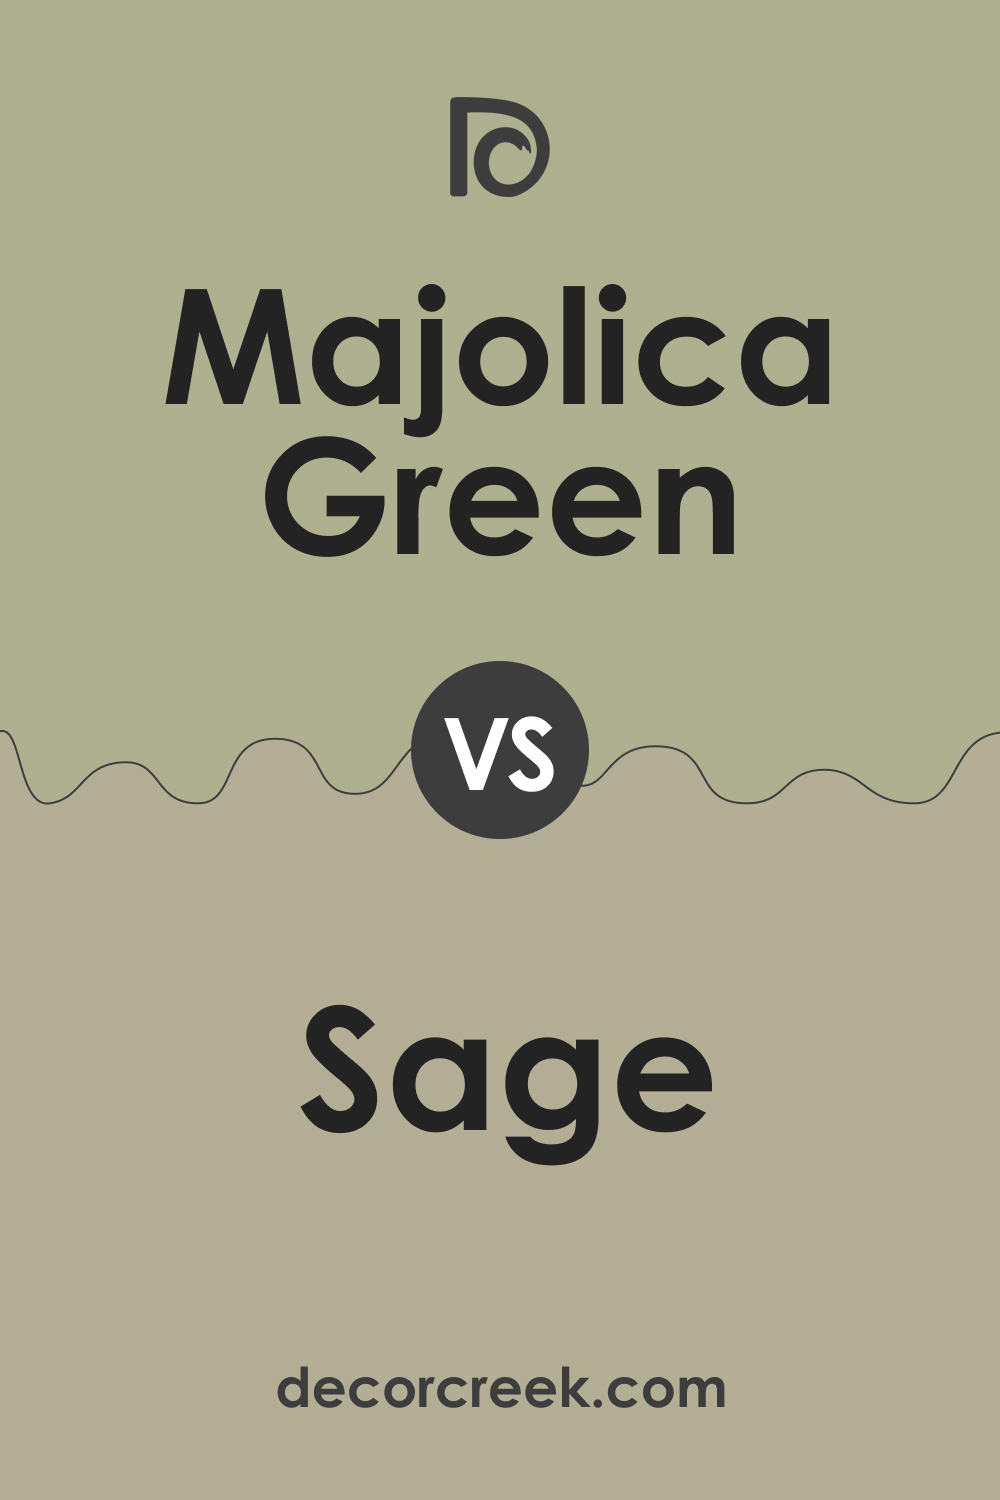 Majolica Green vs Sage